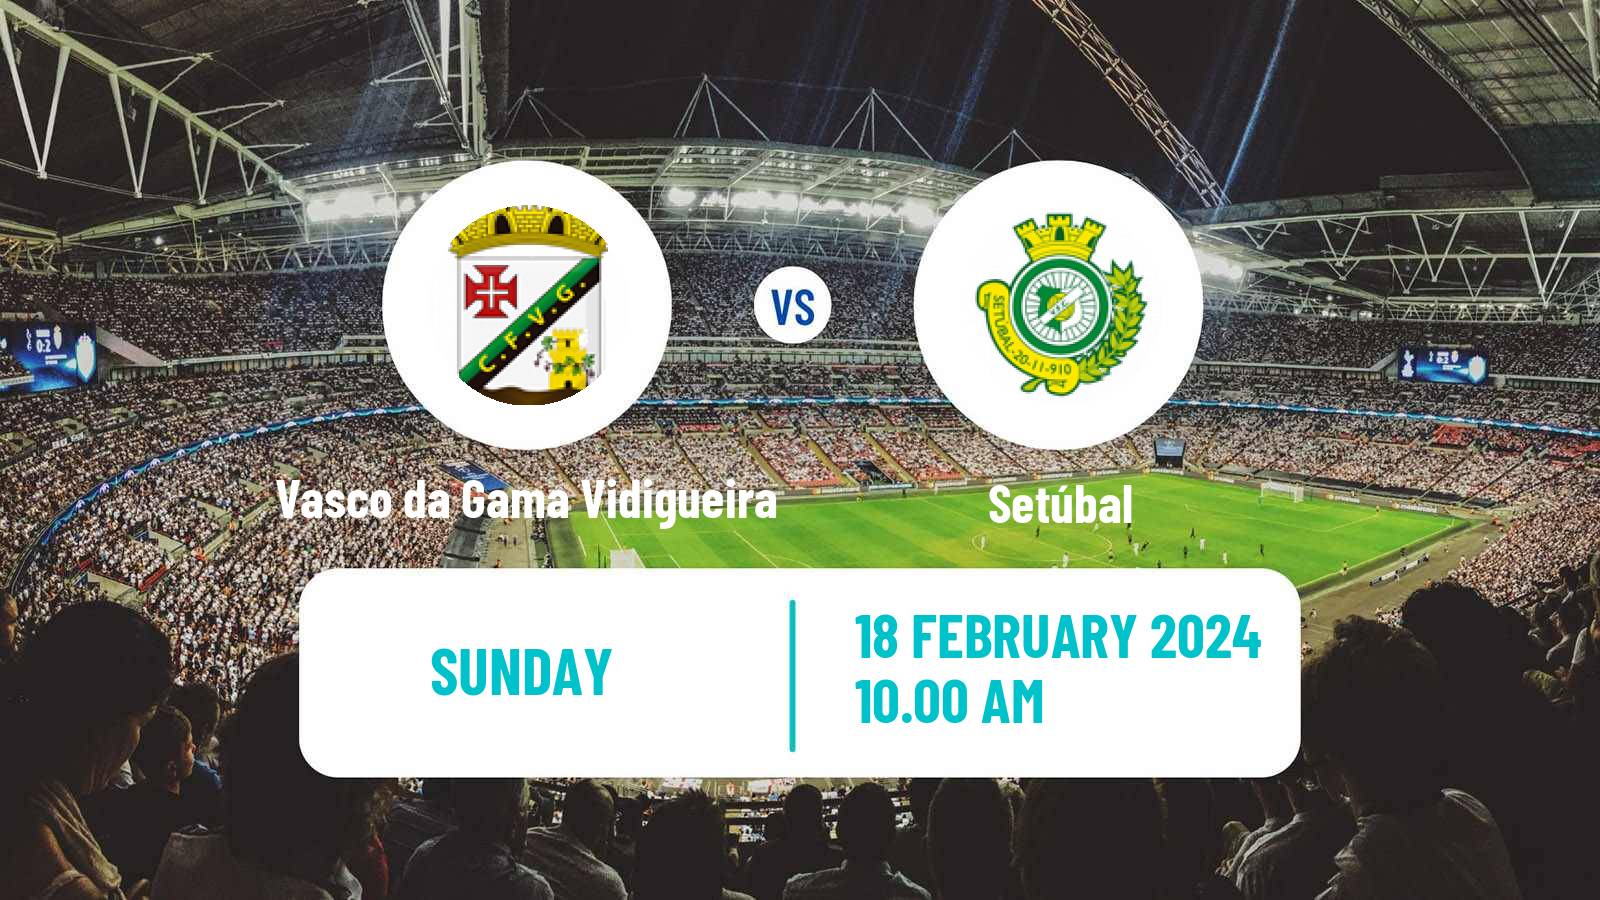 Soccer Campeonato de Portugal - Group D Vasco da Gama Vidigueira - Setúbal